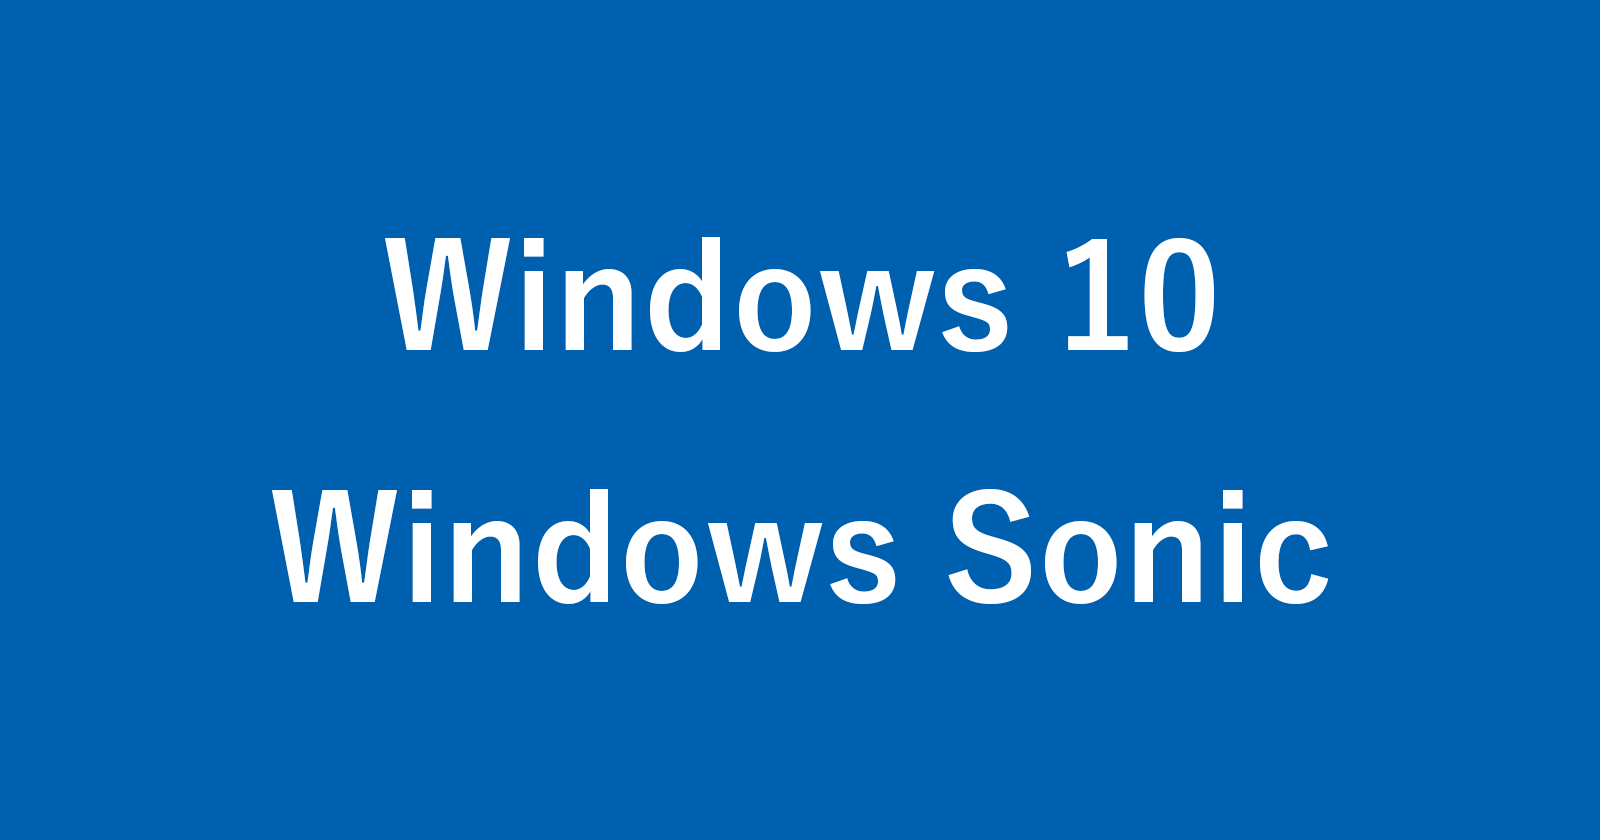 windows 10 windows sonic